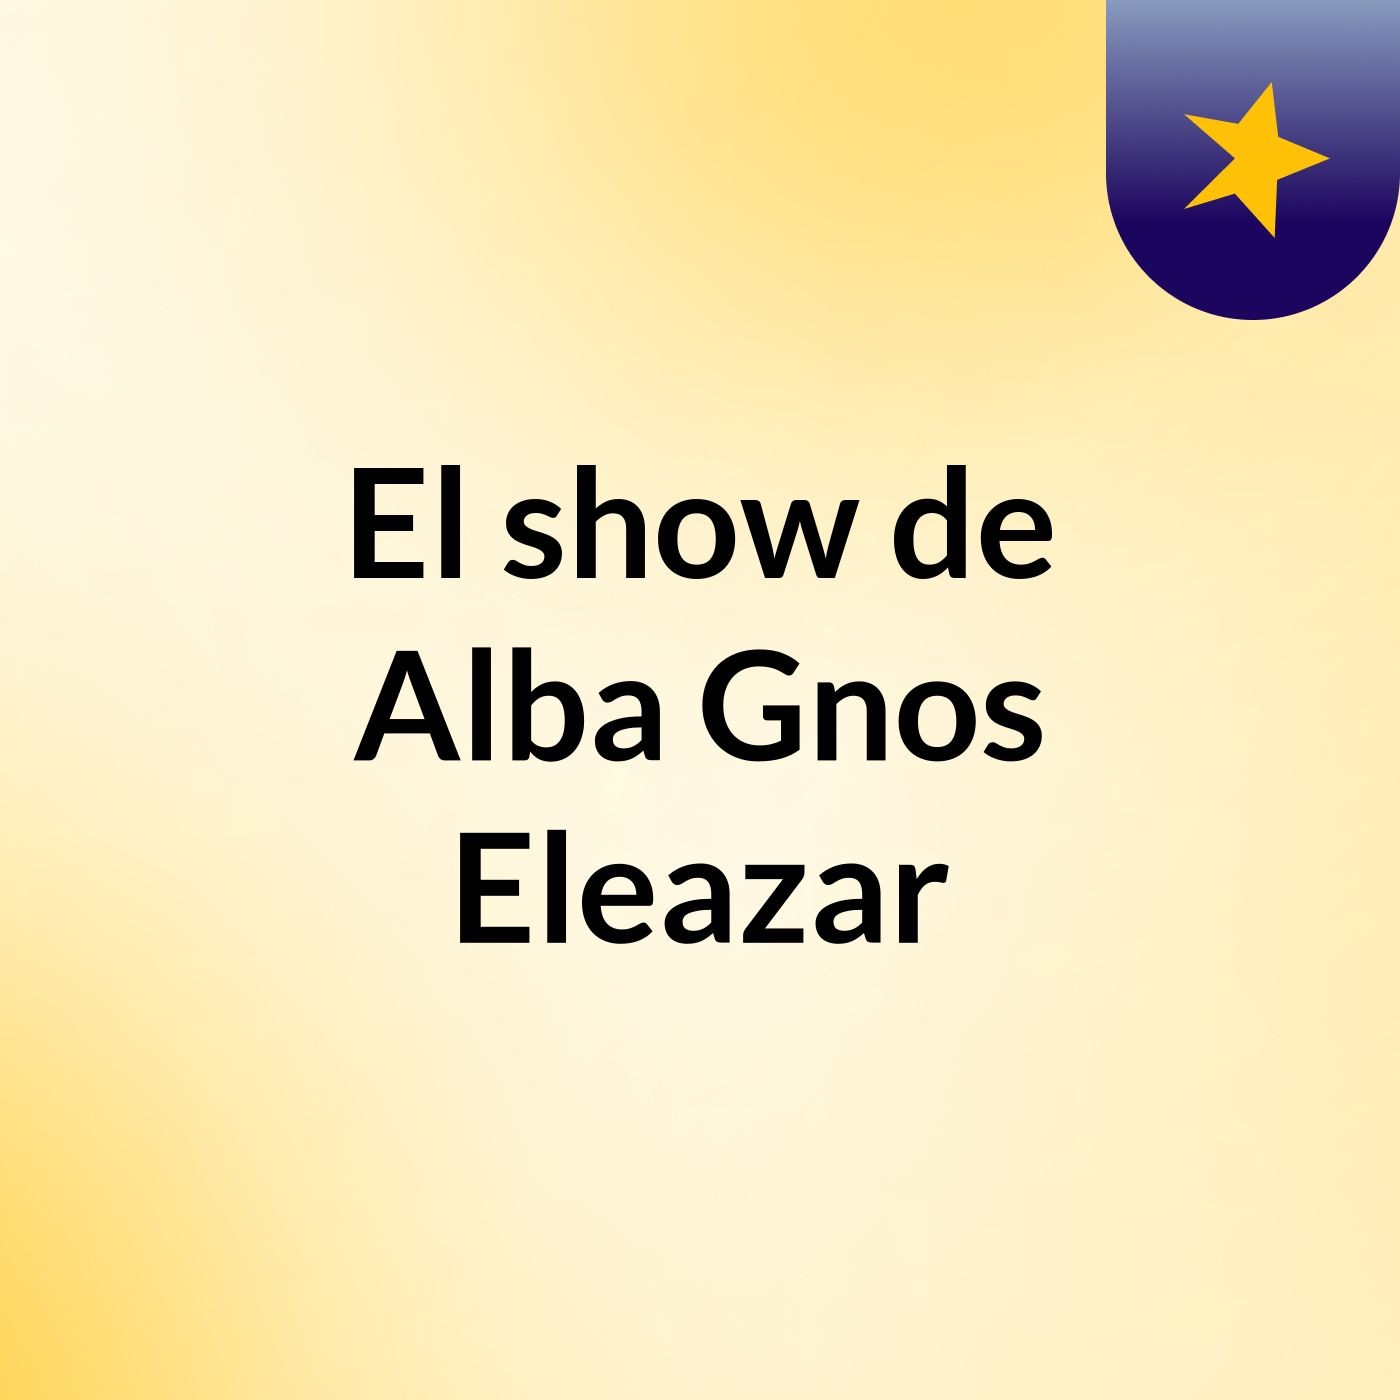 El show de Alba Gnos Eleazar